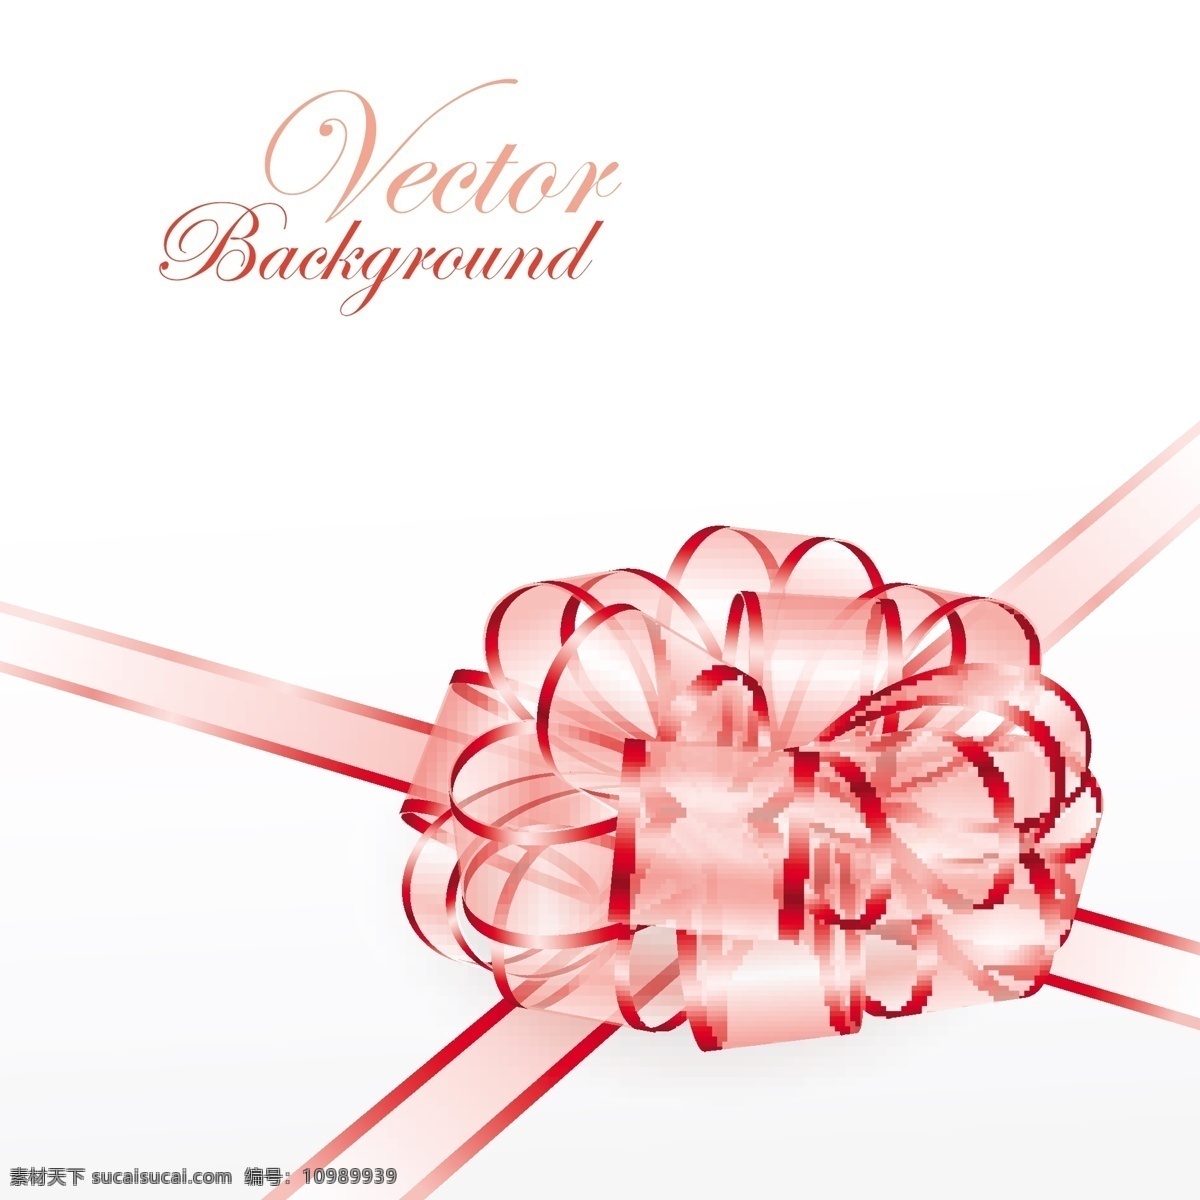 漂亮 红色 透明 礼花 包装 粉色 蝴蝶结 精美 矢量素材 丝带 矢量图 其他矢量图